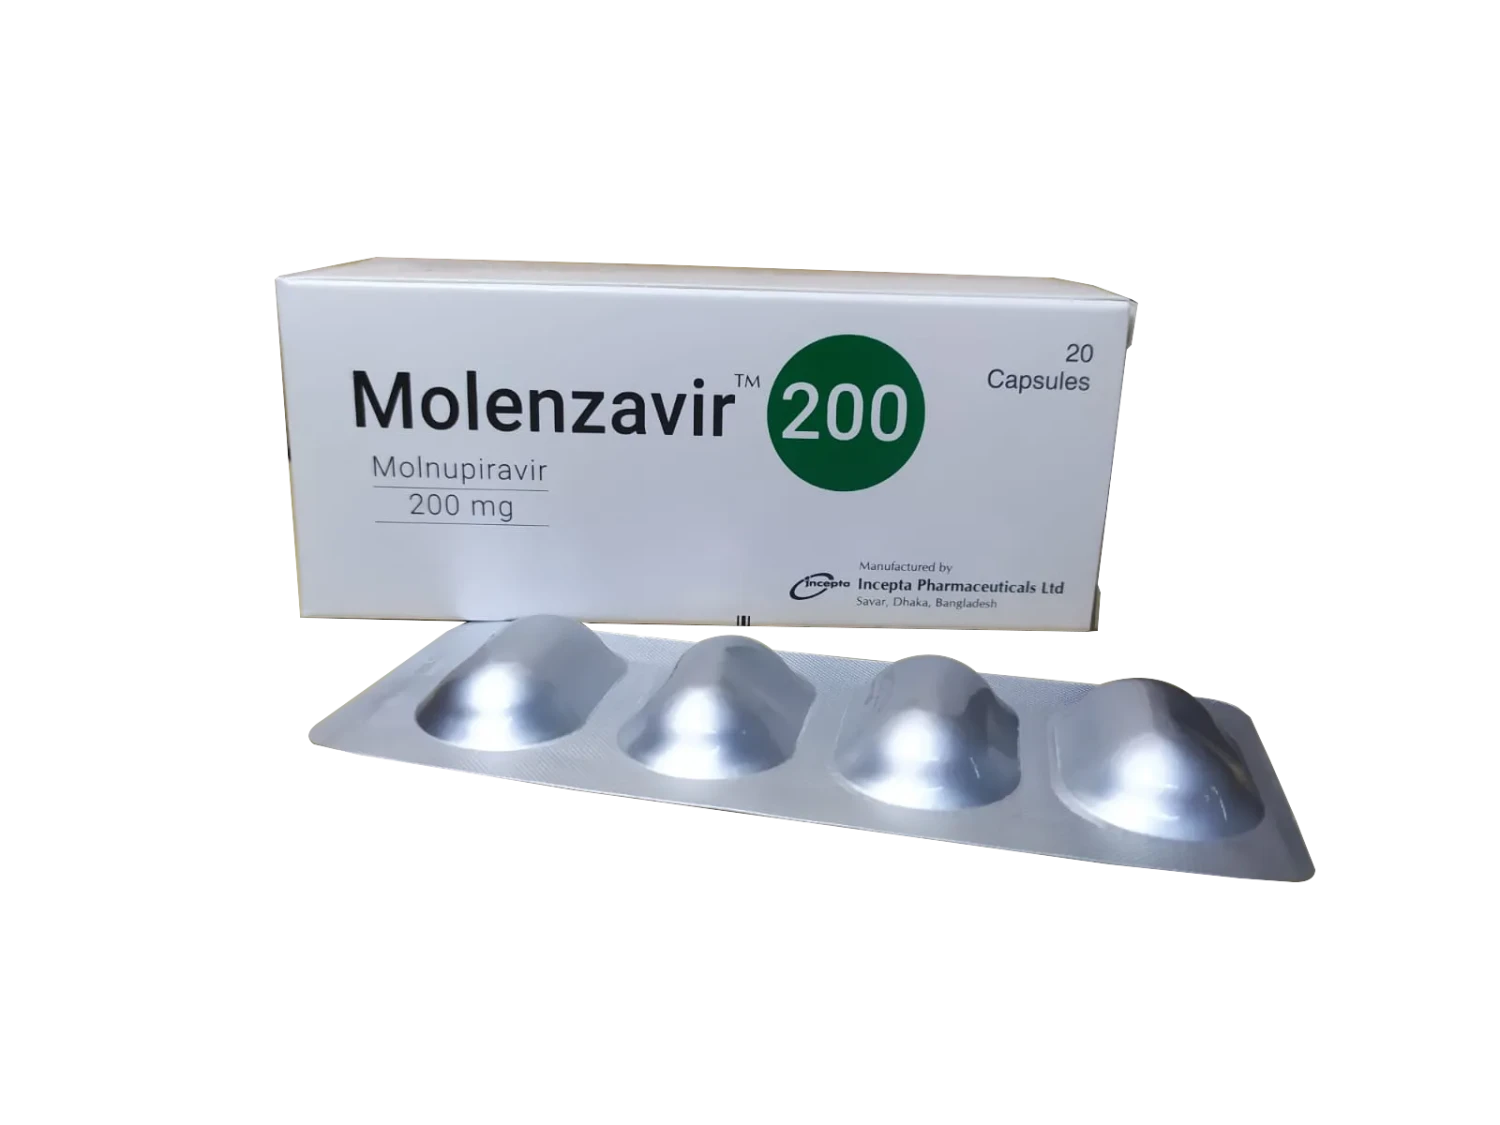 Molenzavir 200